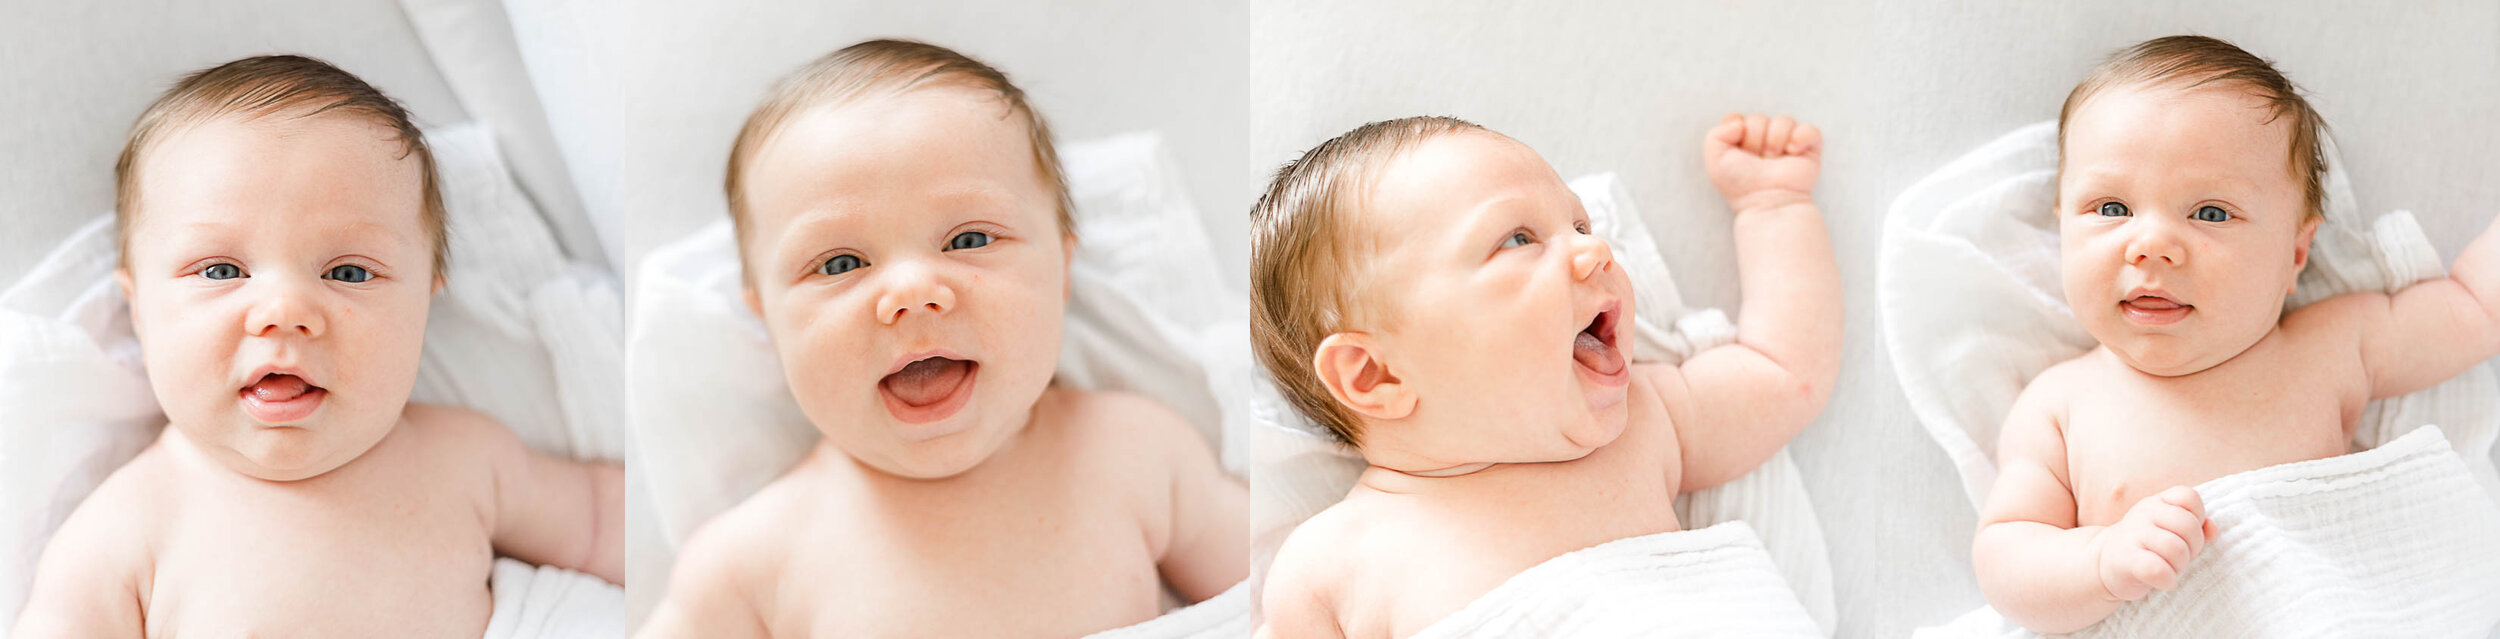 dean-newborn-claytonphotodesign-chicago-newborn-photographer.jpg